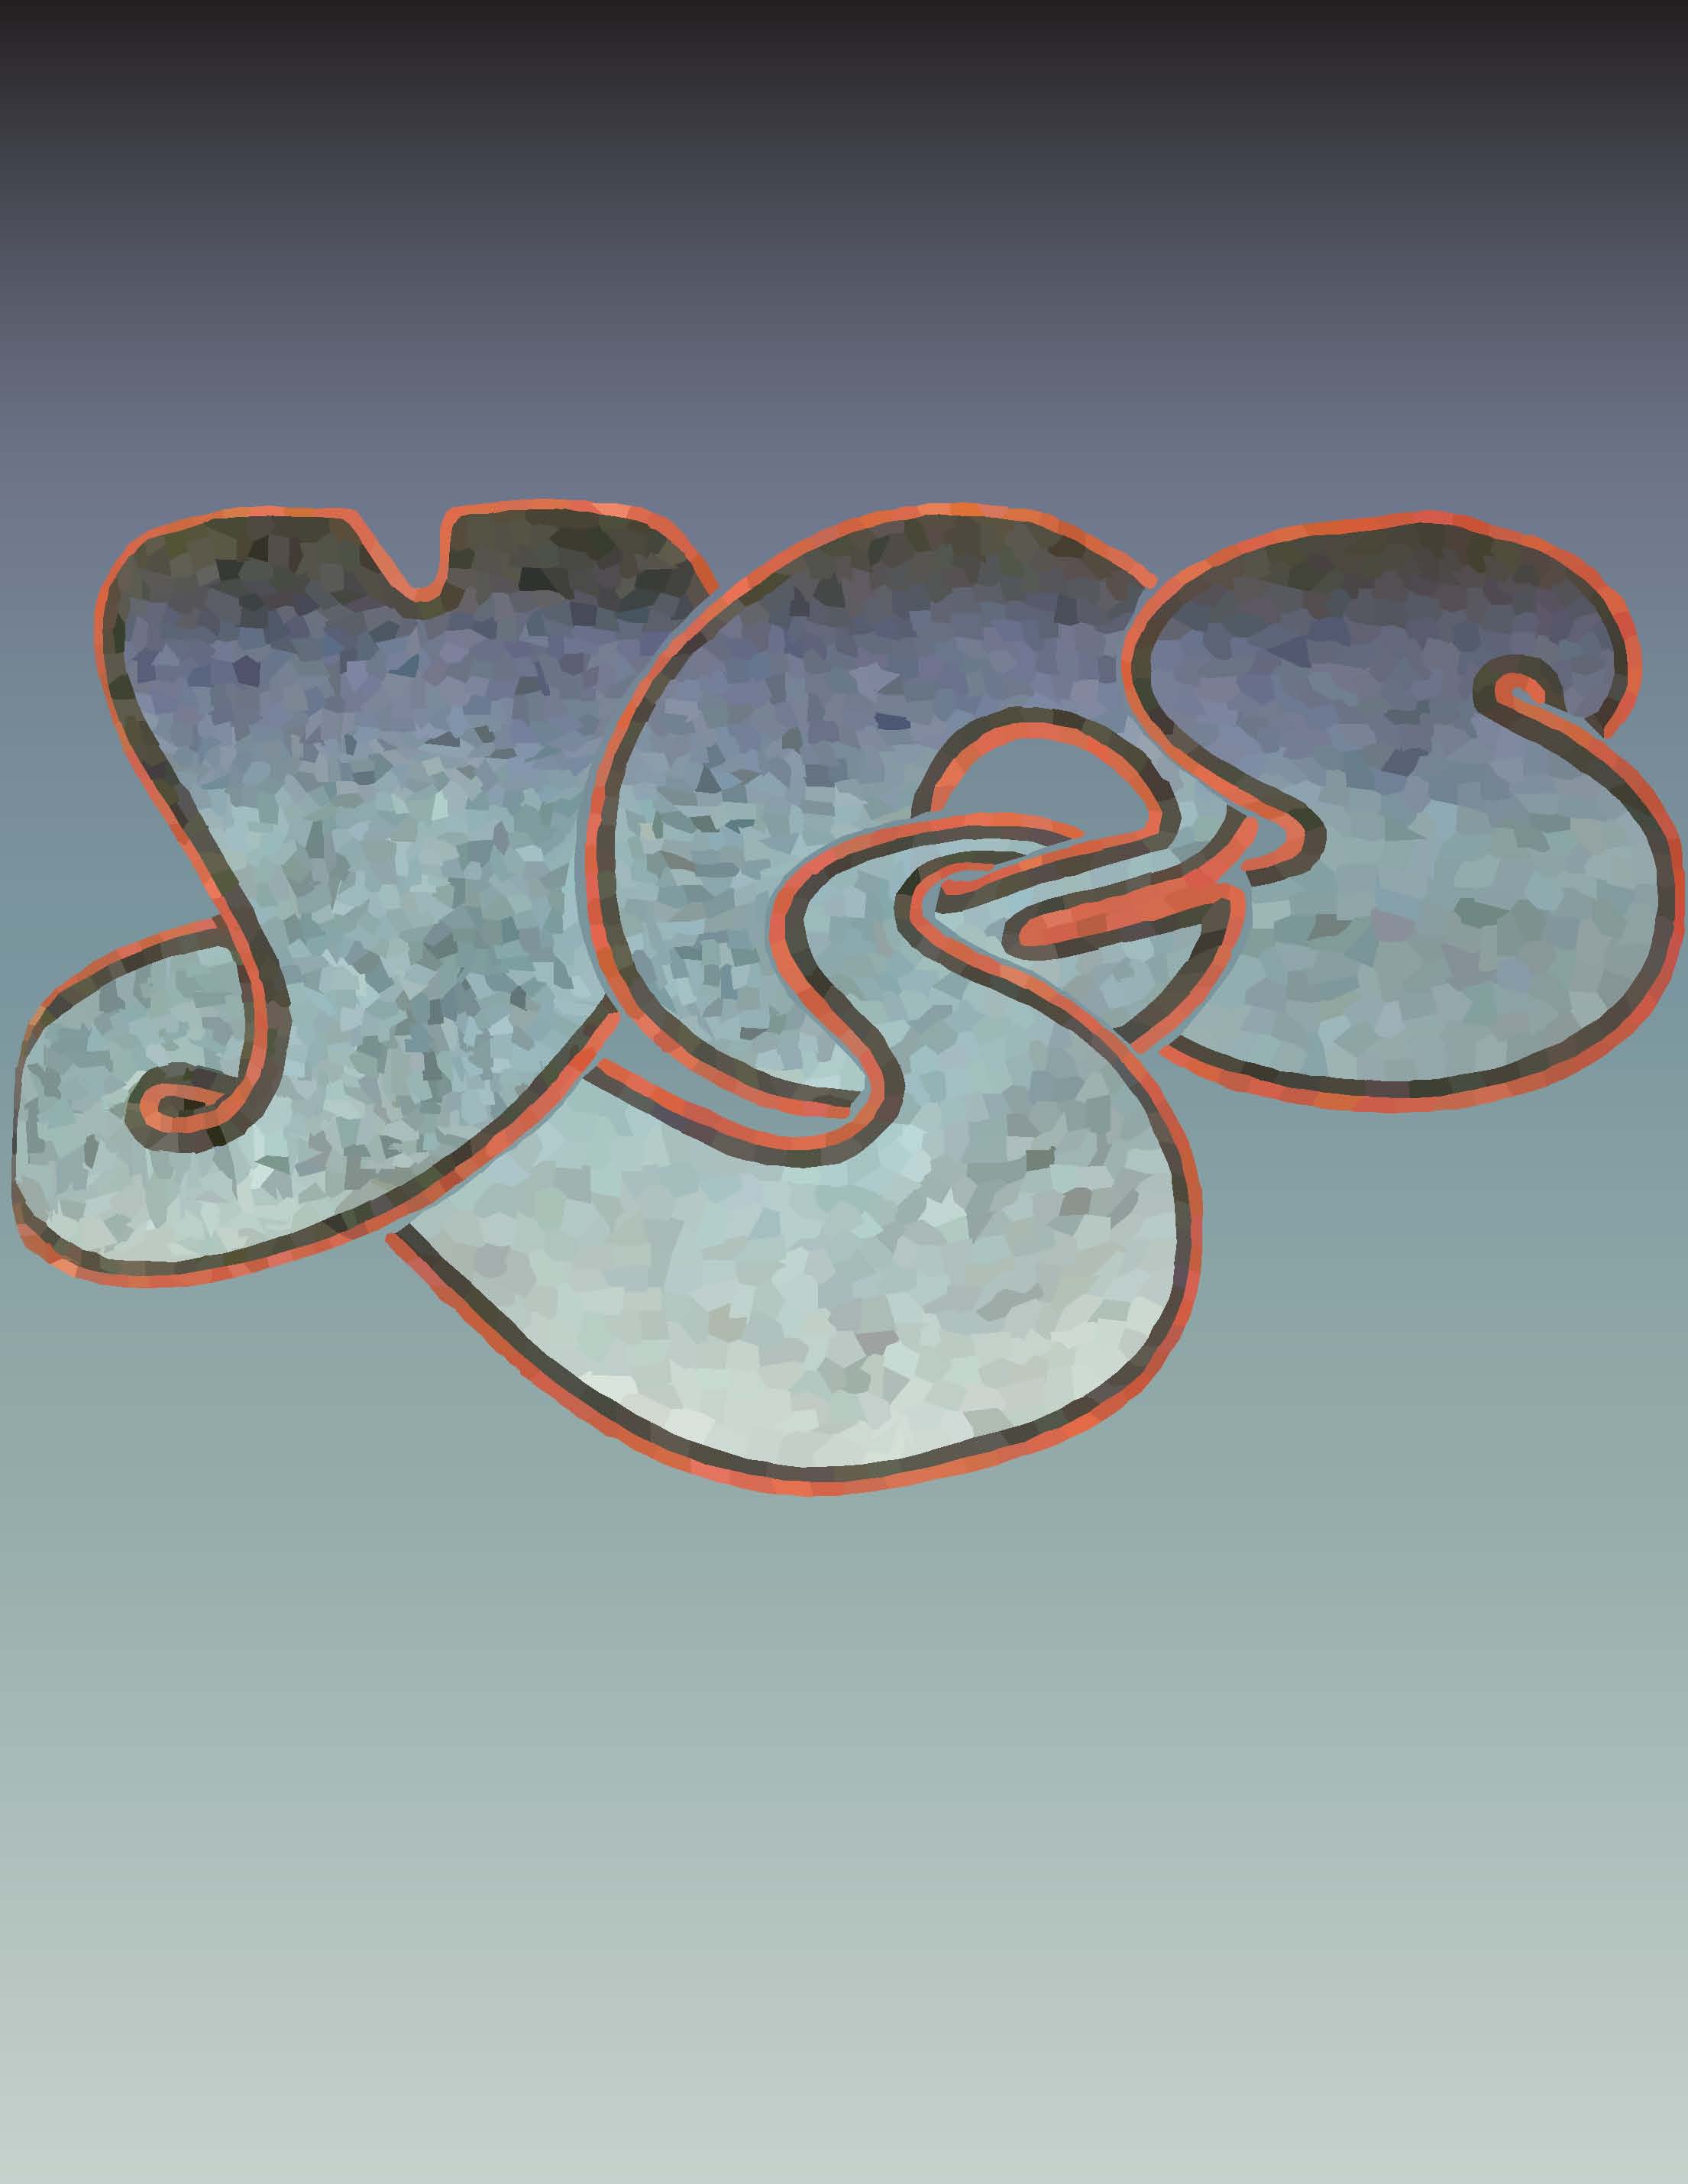 Yes Band Logo by DoomsayerVortex on DeviantArt